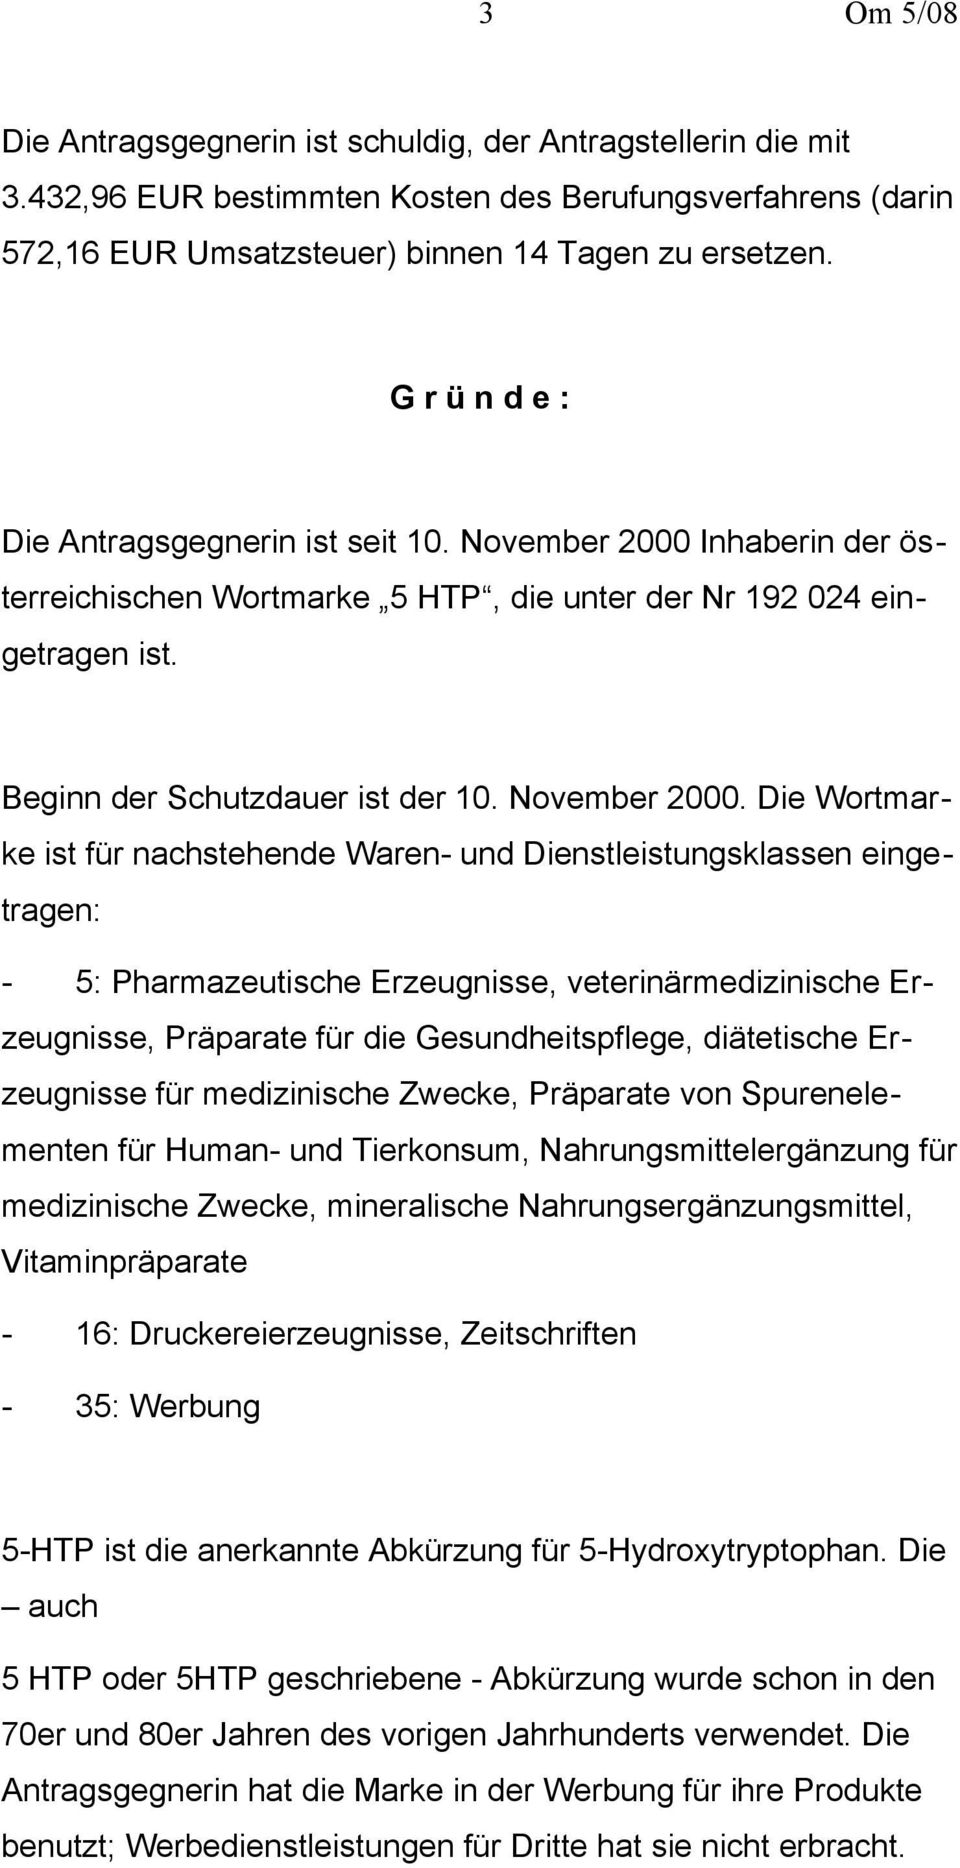 Inhaberin der österreichischen Wortmarke 5 HTP, die unter der Nr 192 024 eingetragen ist. Beginn der Schutzdauer ist der 10. November 2000.